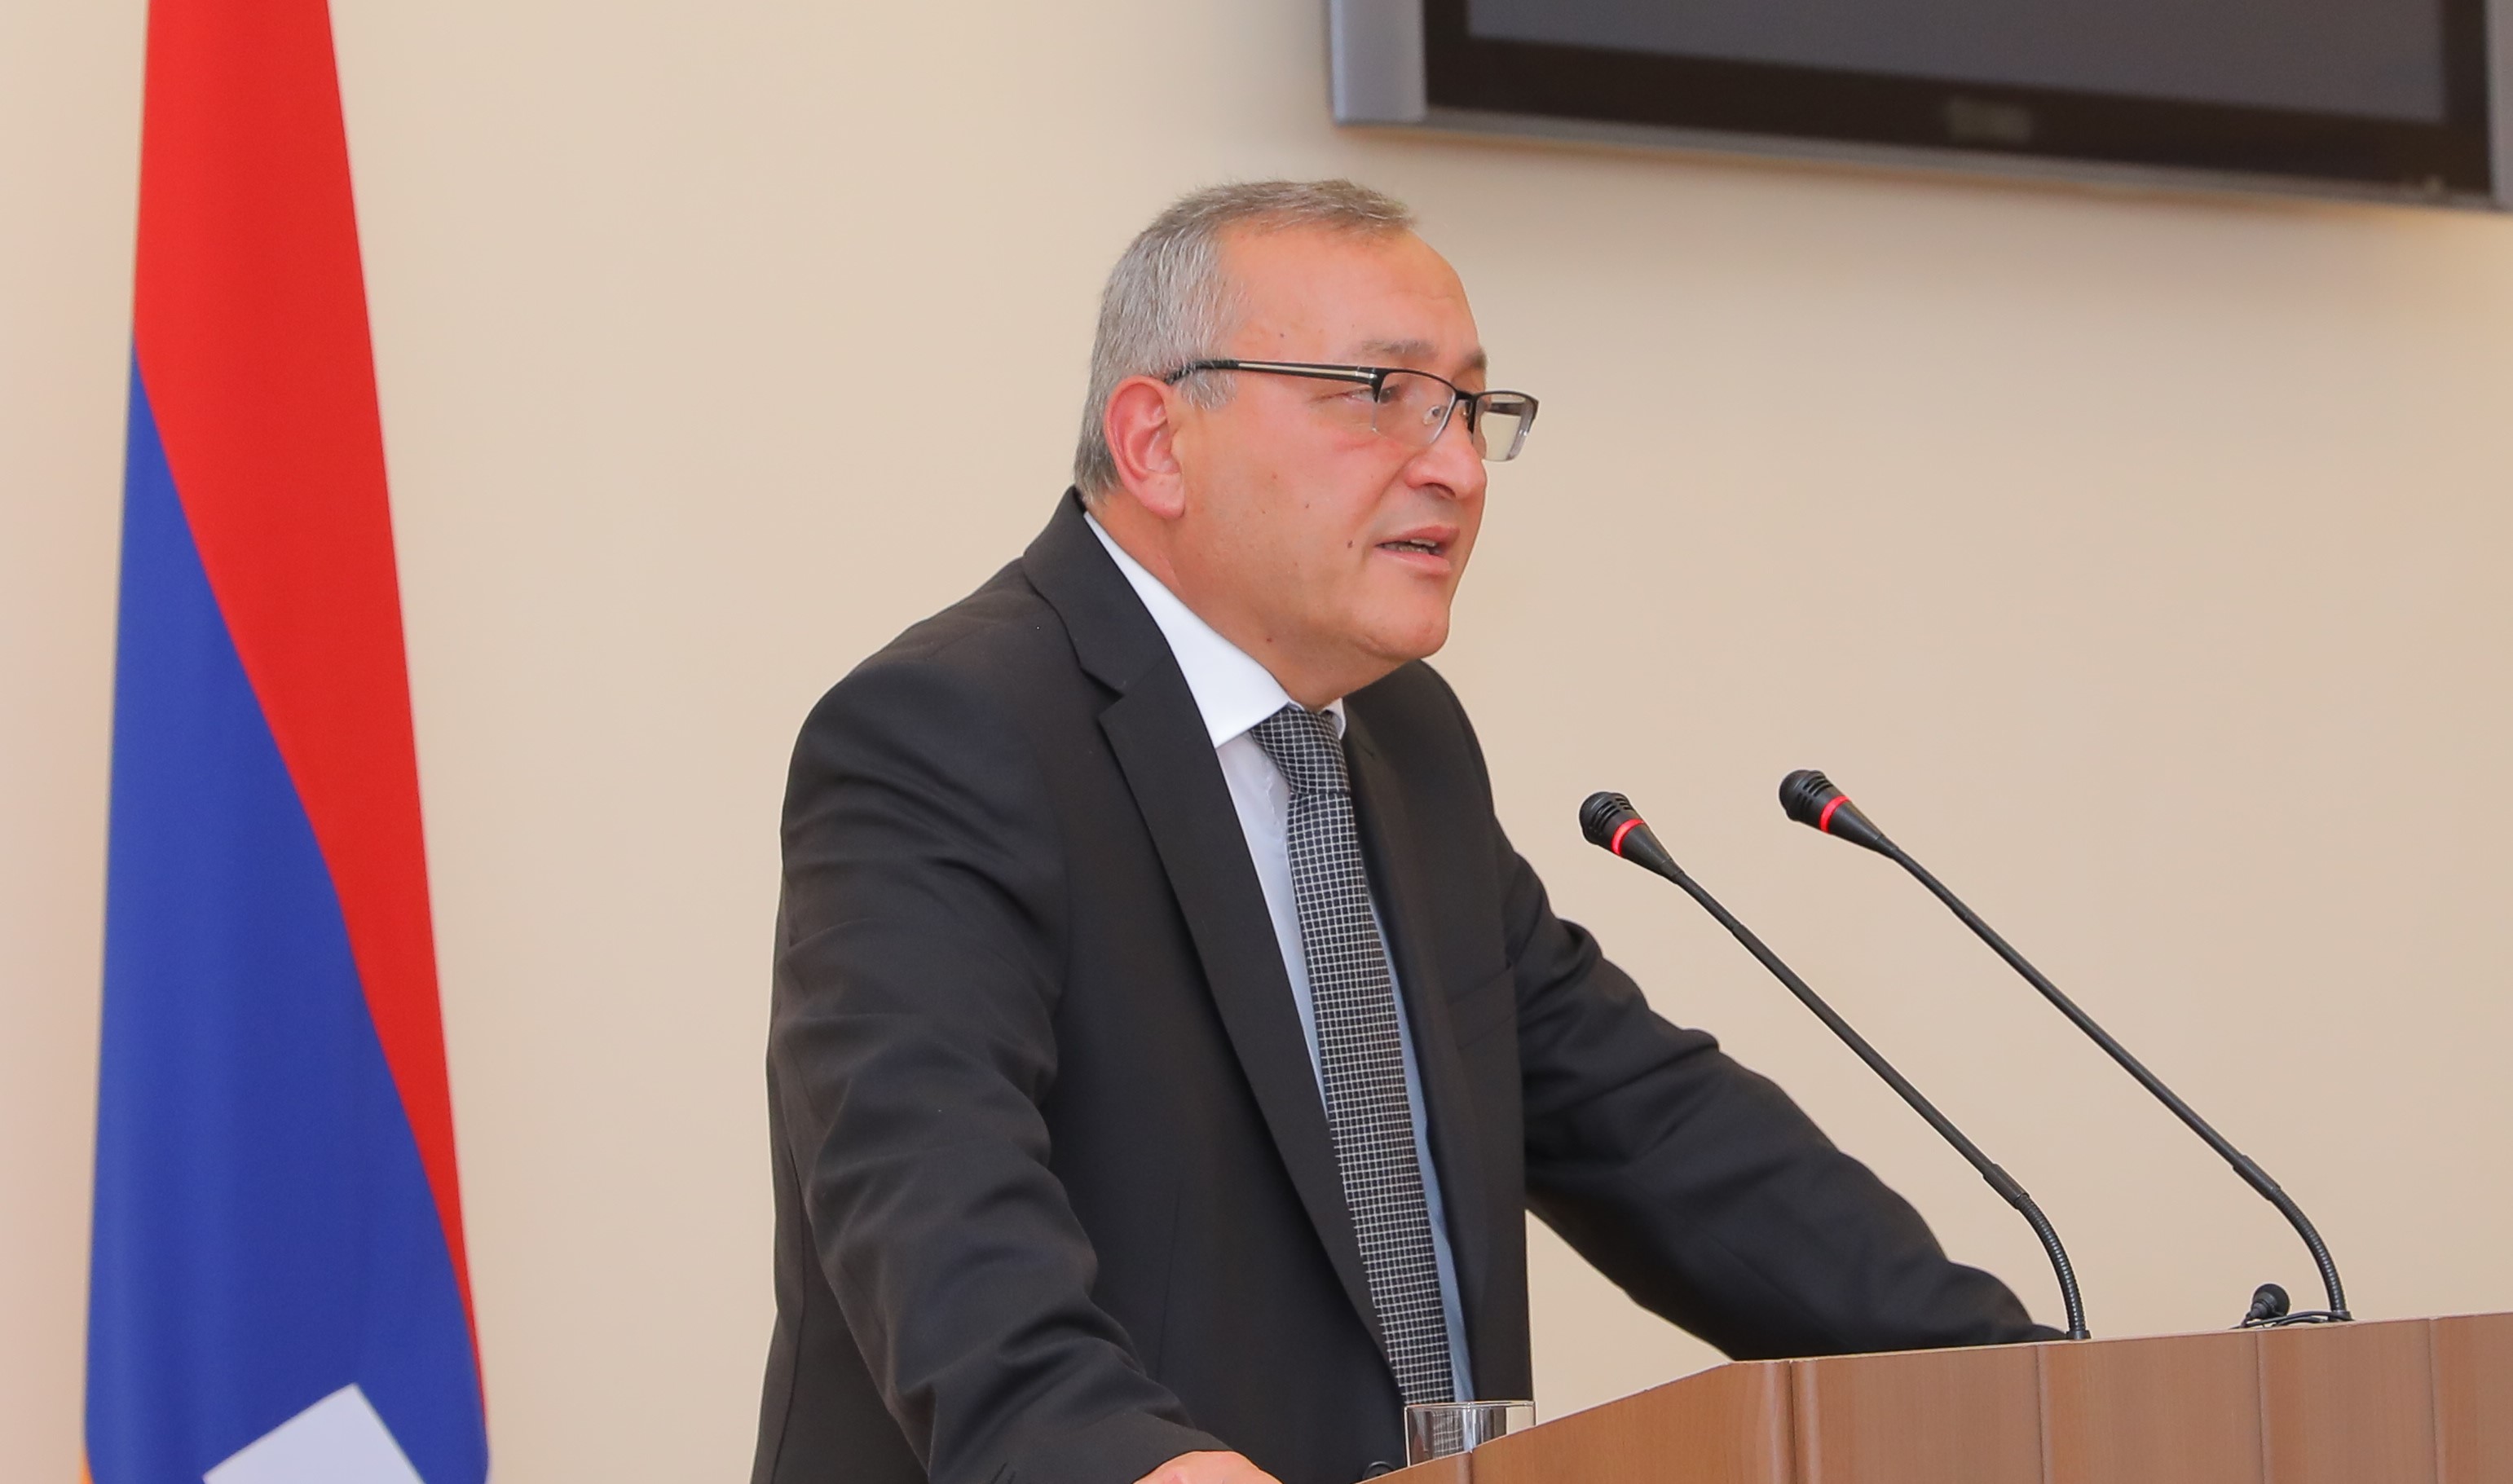 Для переговоров между Азербайджаном и Арцахом нет атмосферы взаимного доверия: Товмасян